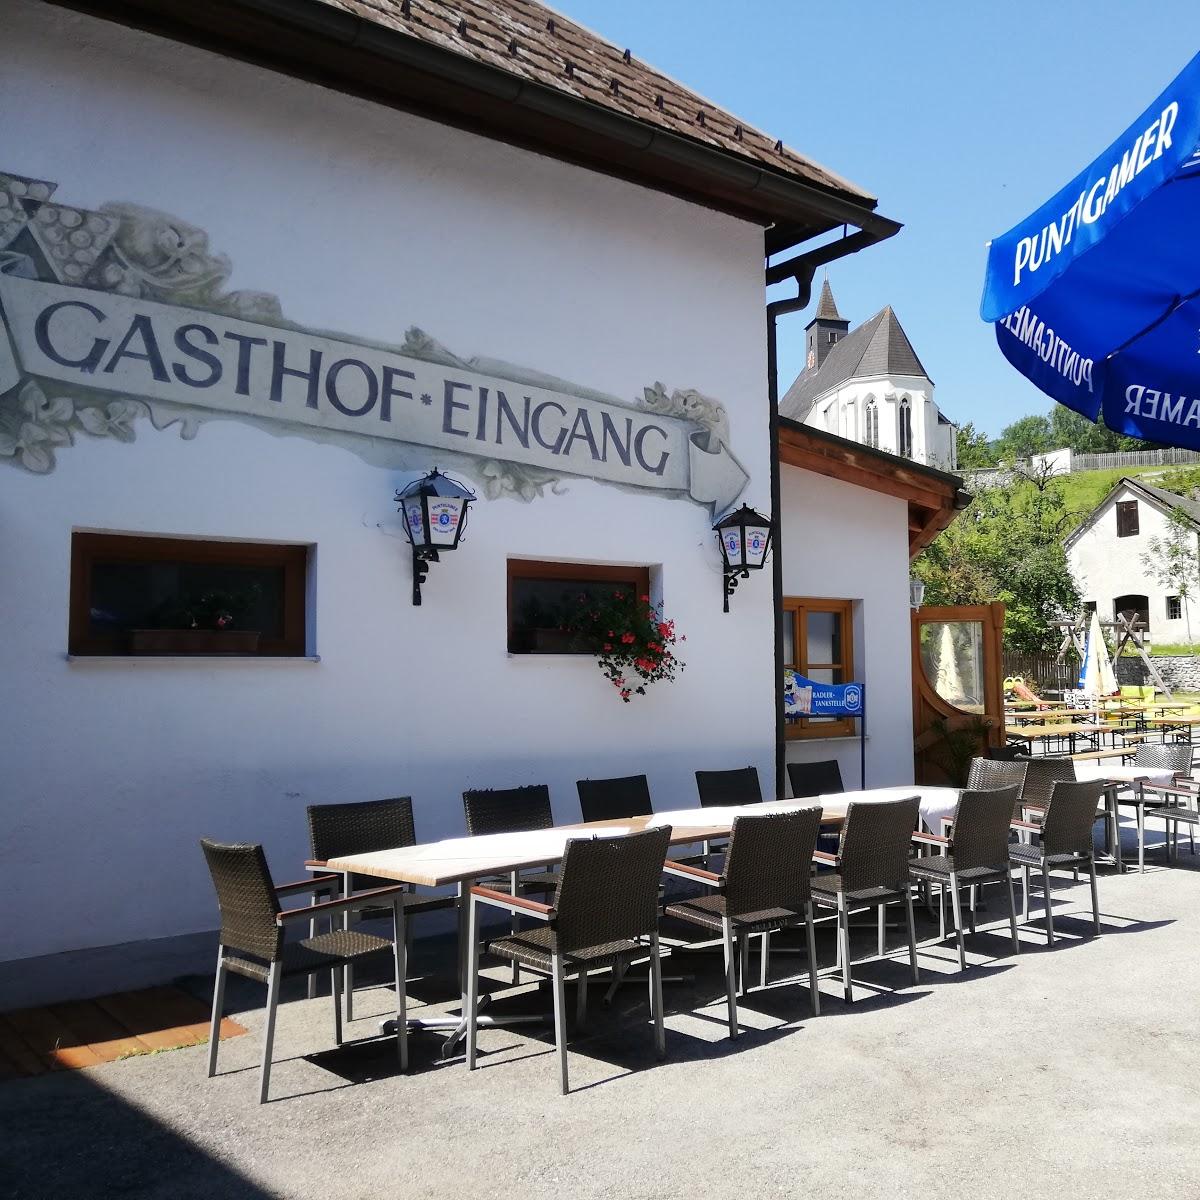 Restaurant "Pachlerhof - Gasthaus & Parkcafe" in Kleinzell